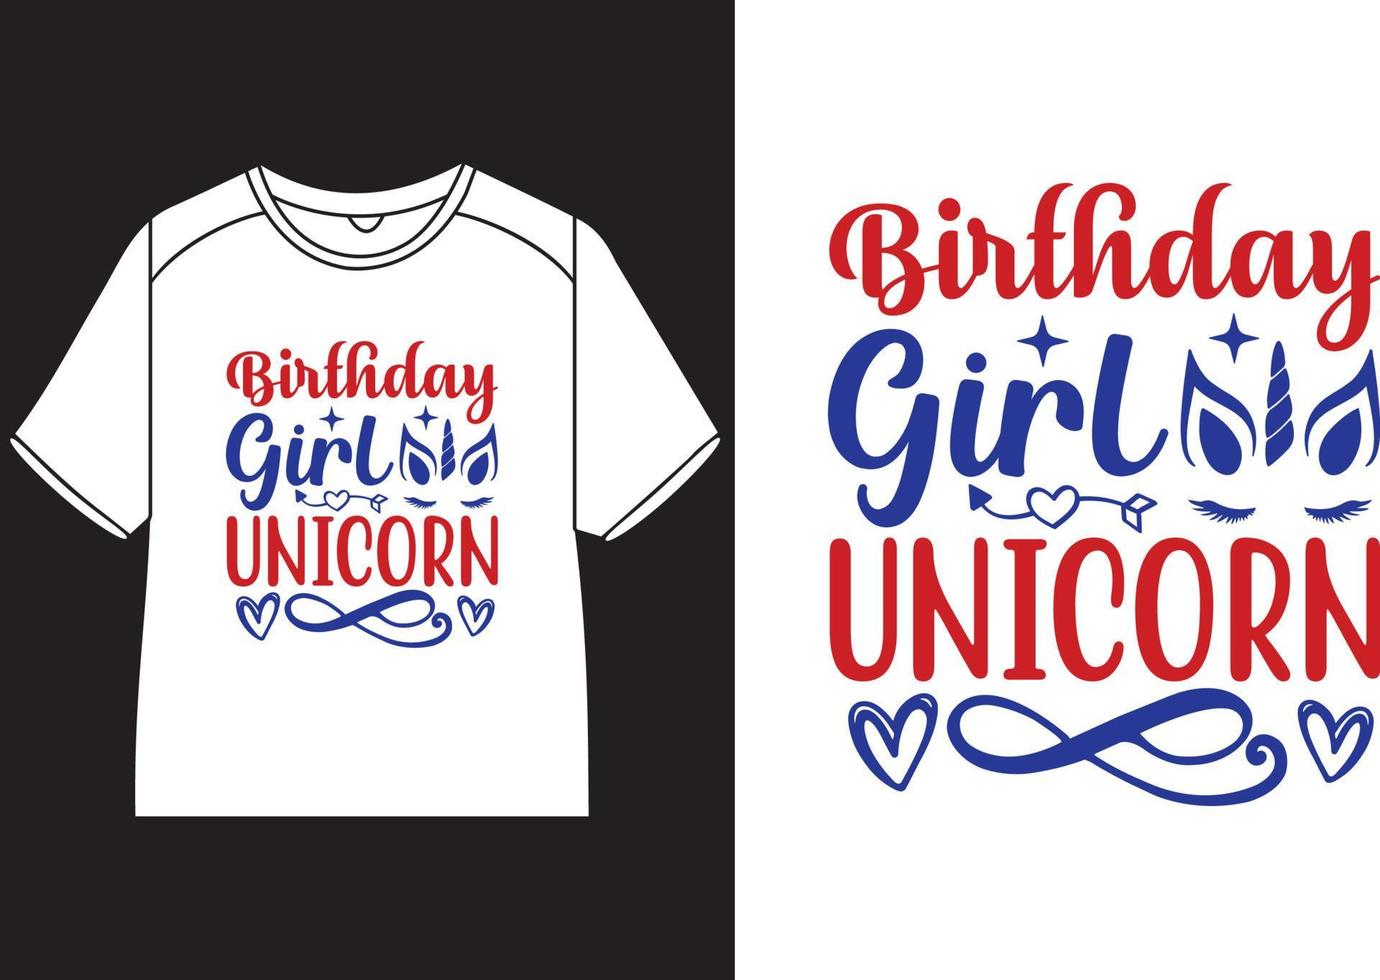 födelsedag flicka enhörning t-shirt design vektor